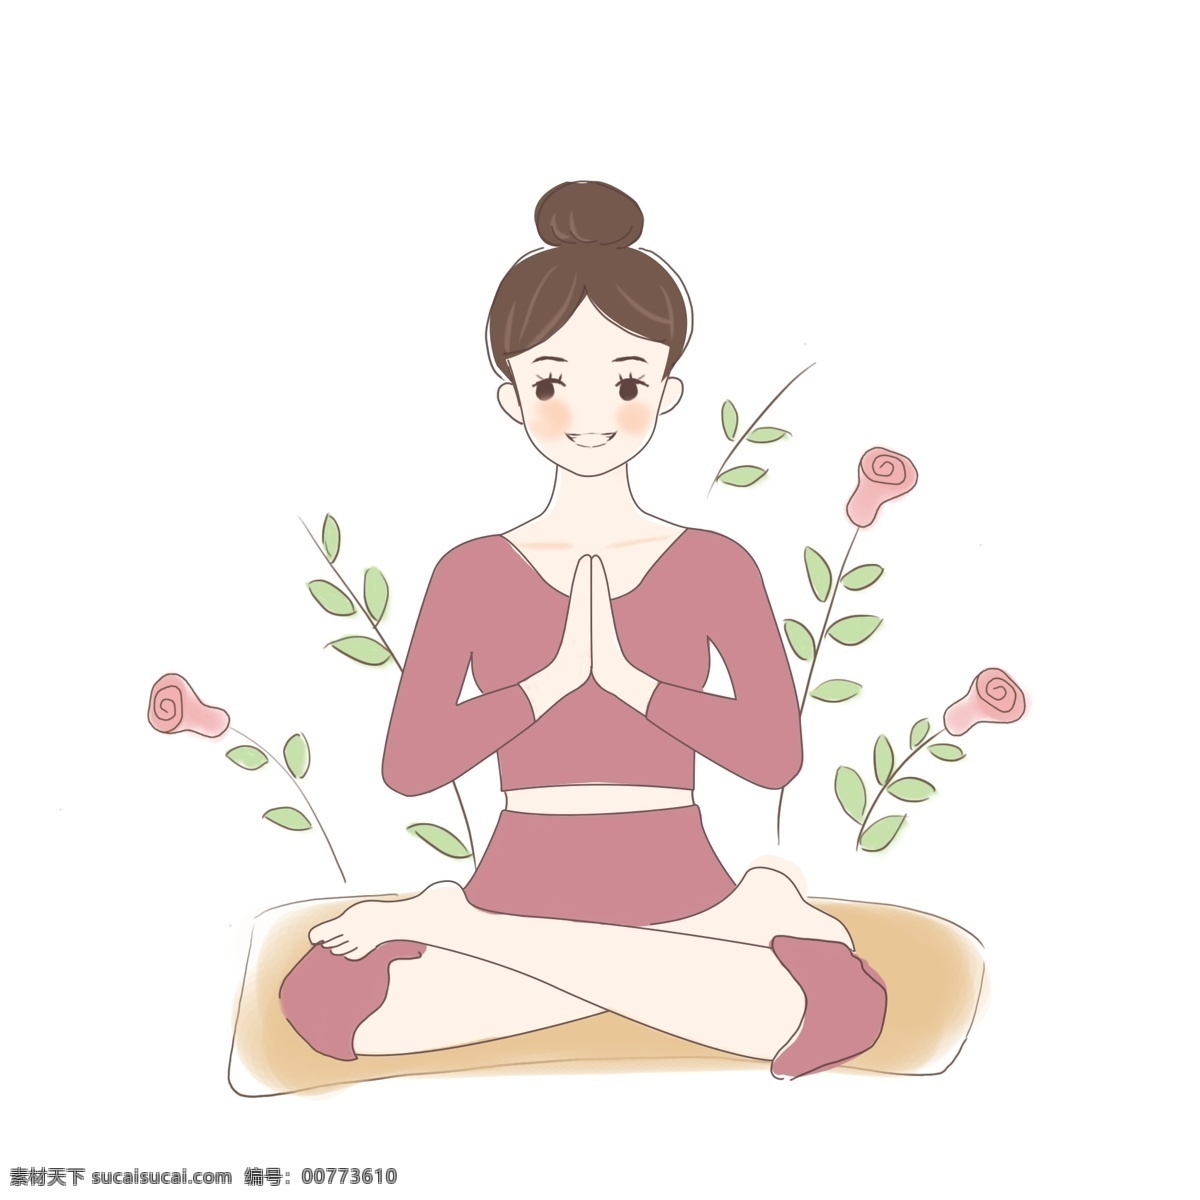 瑜伽 女孩 卡通 手绘 练瑜伽 祈祷 塑身 静坐 养生 美容 减肥 瘦身 瑜伽美女 瑜伽动作